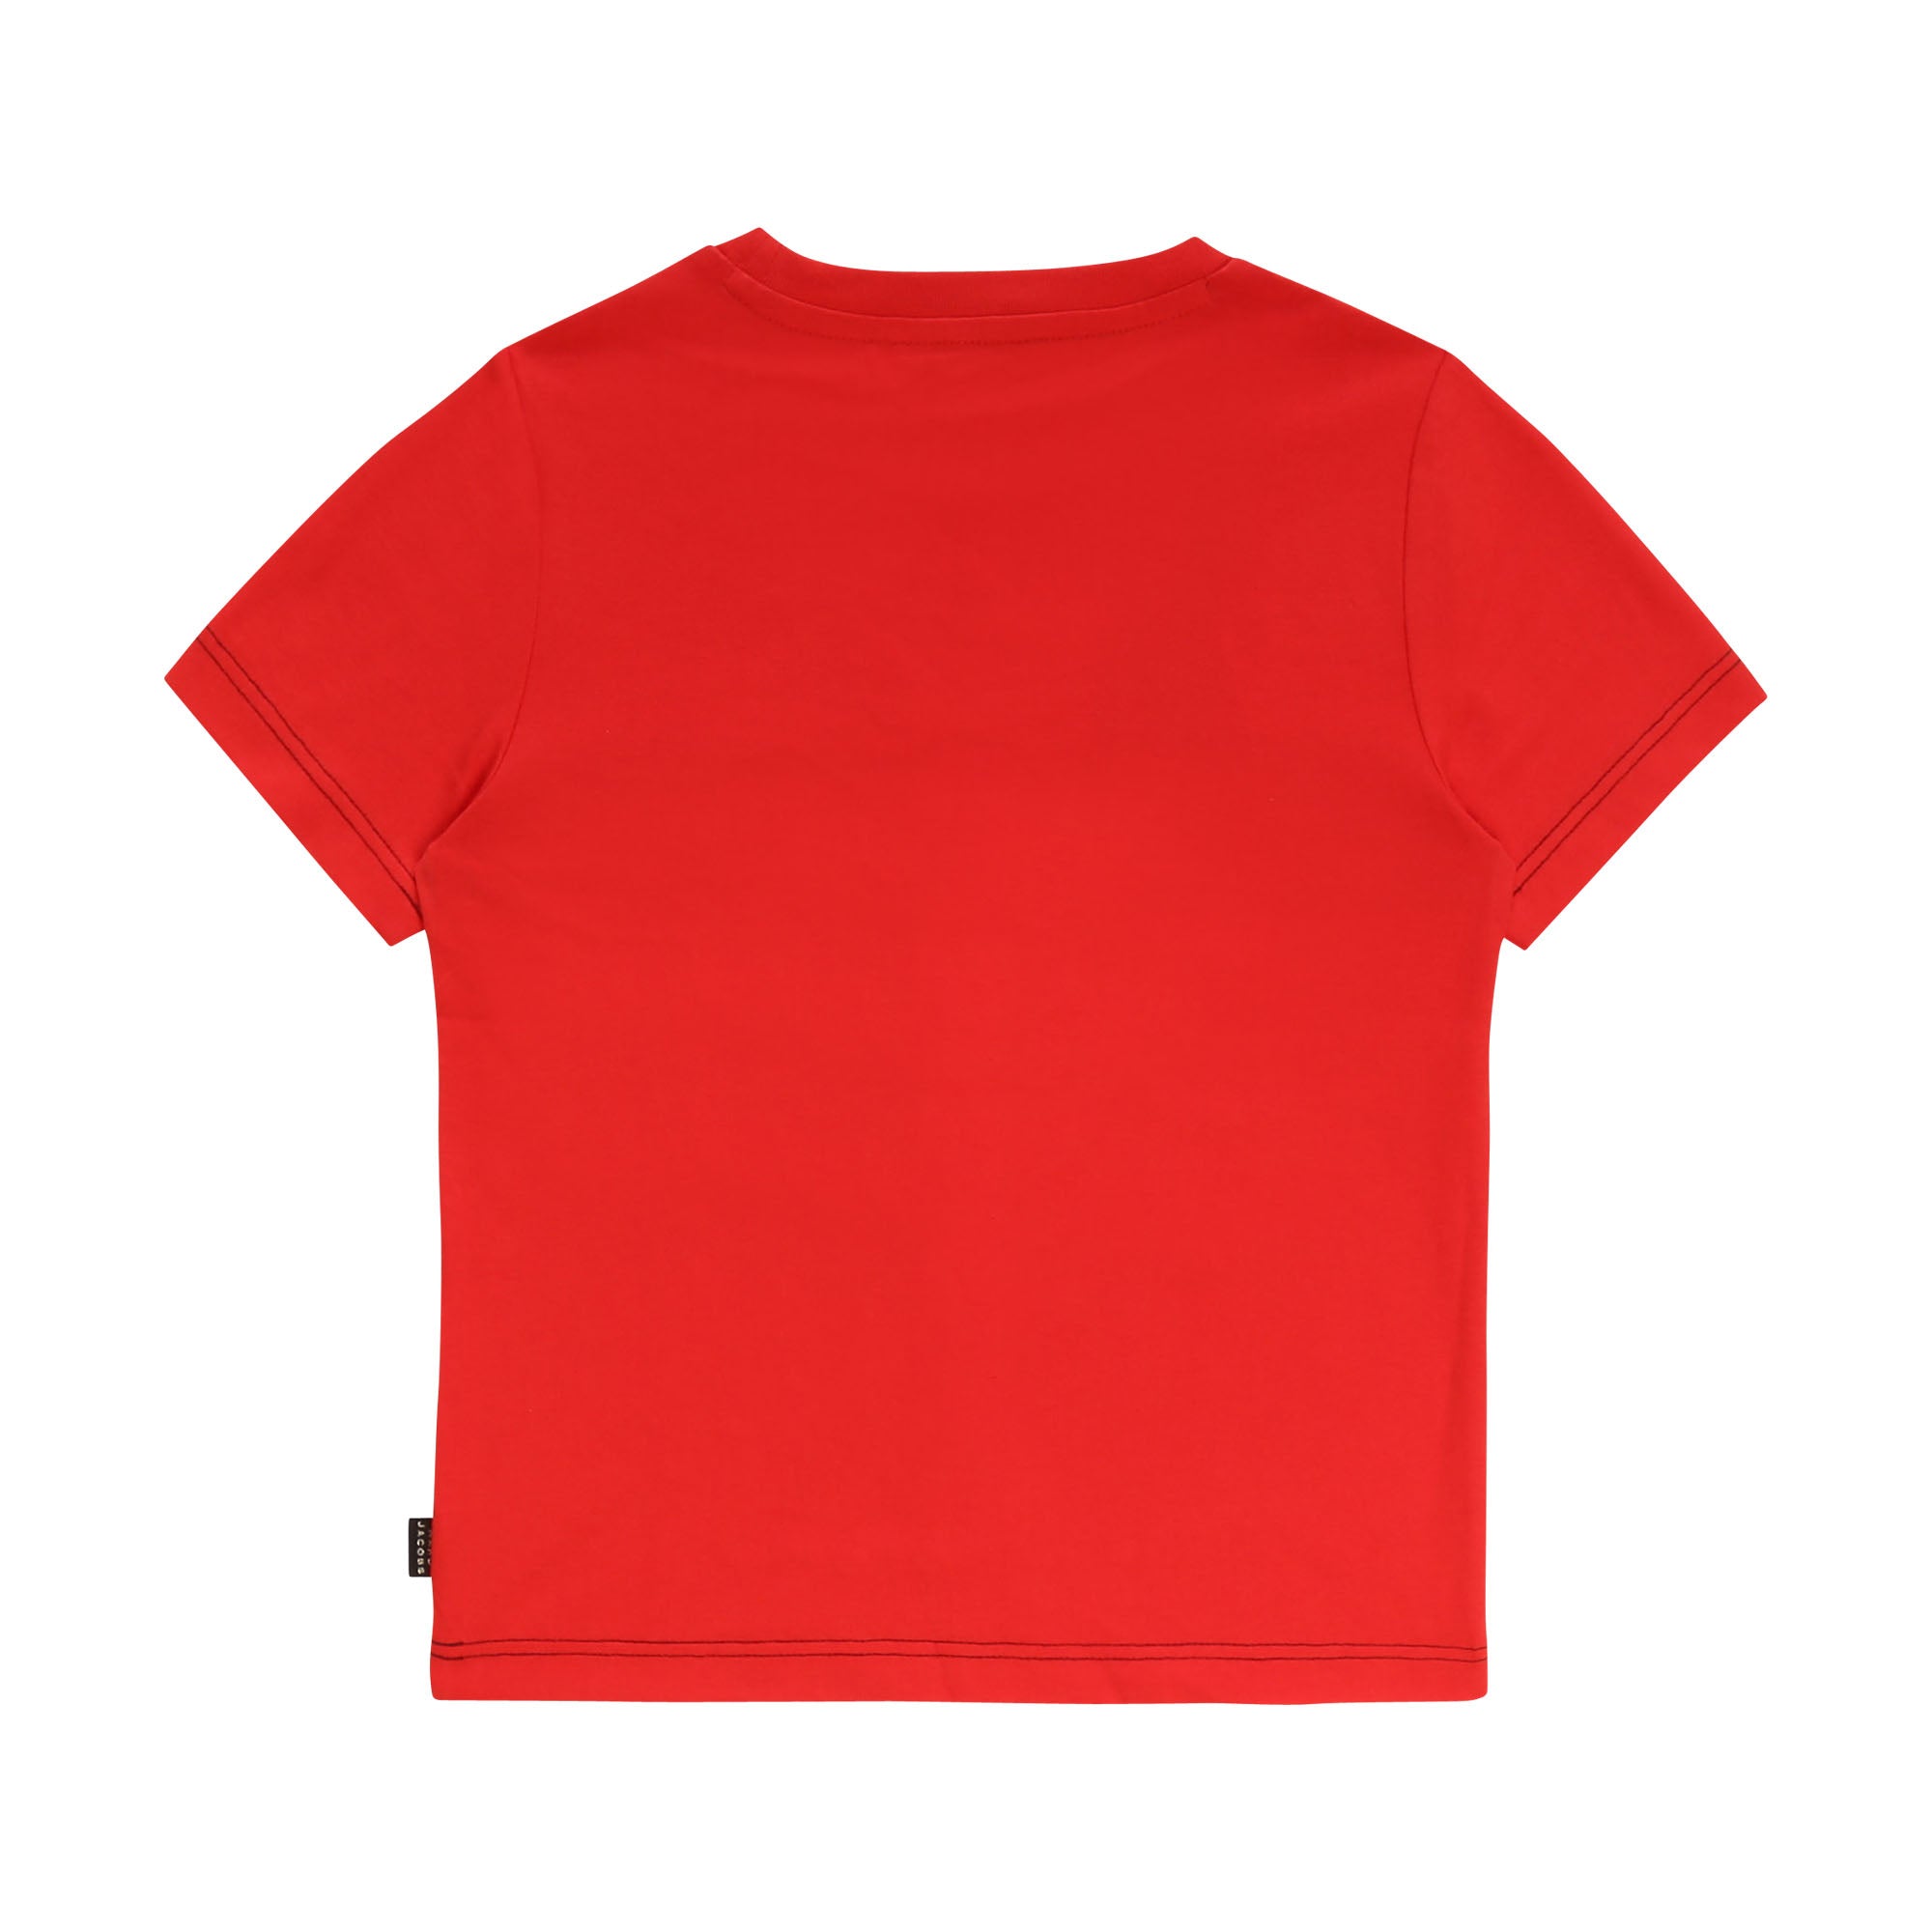 Boys Red Printing Cotton T-shirt